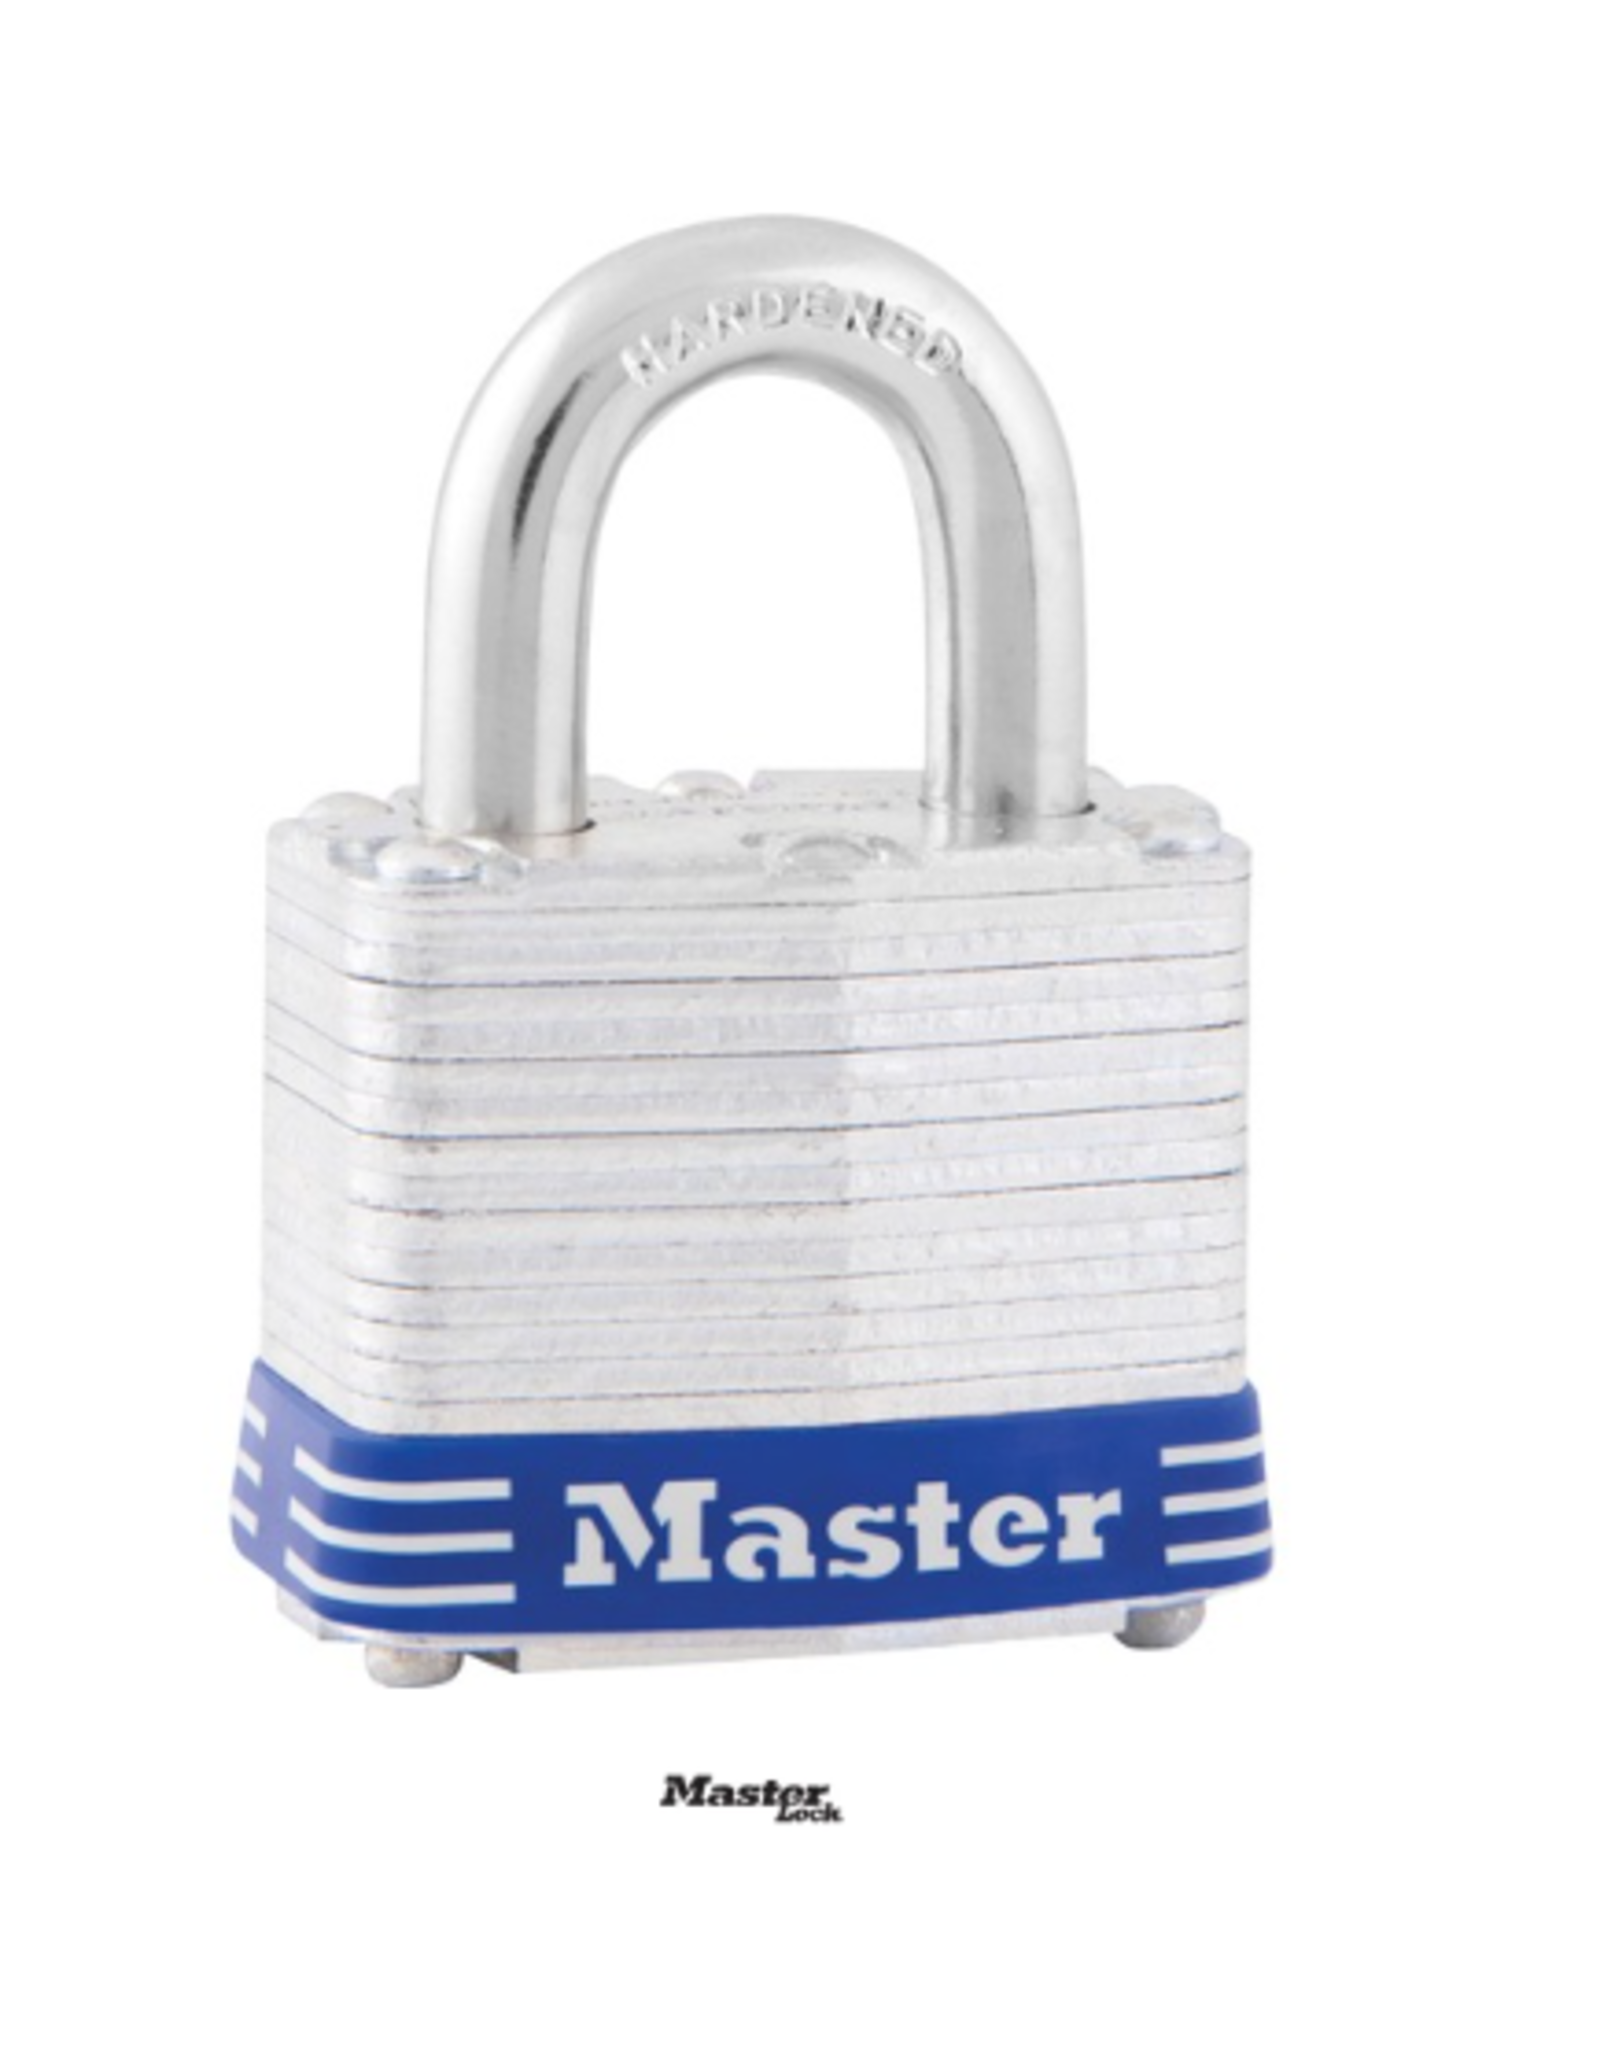 Master Lock Tumbler Padlock - Silver 1.6in 1Pk BP